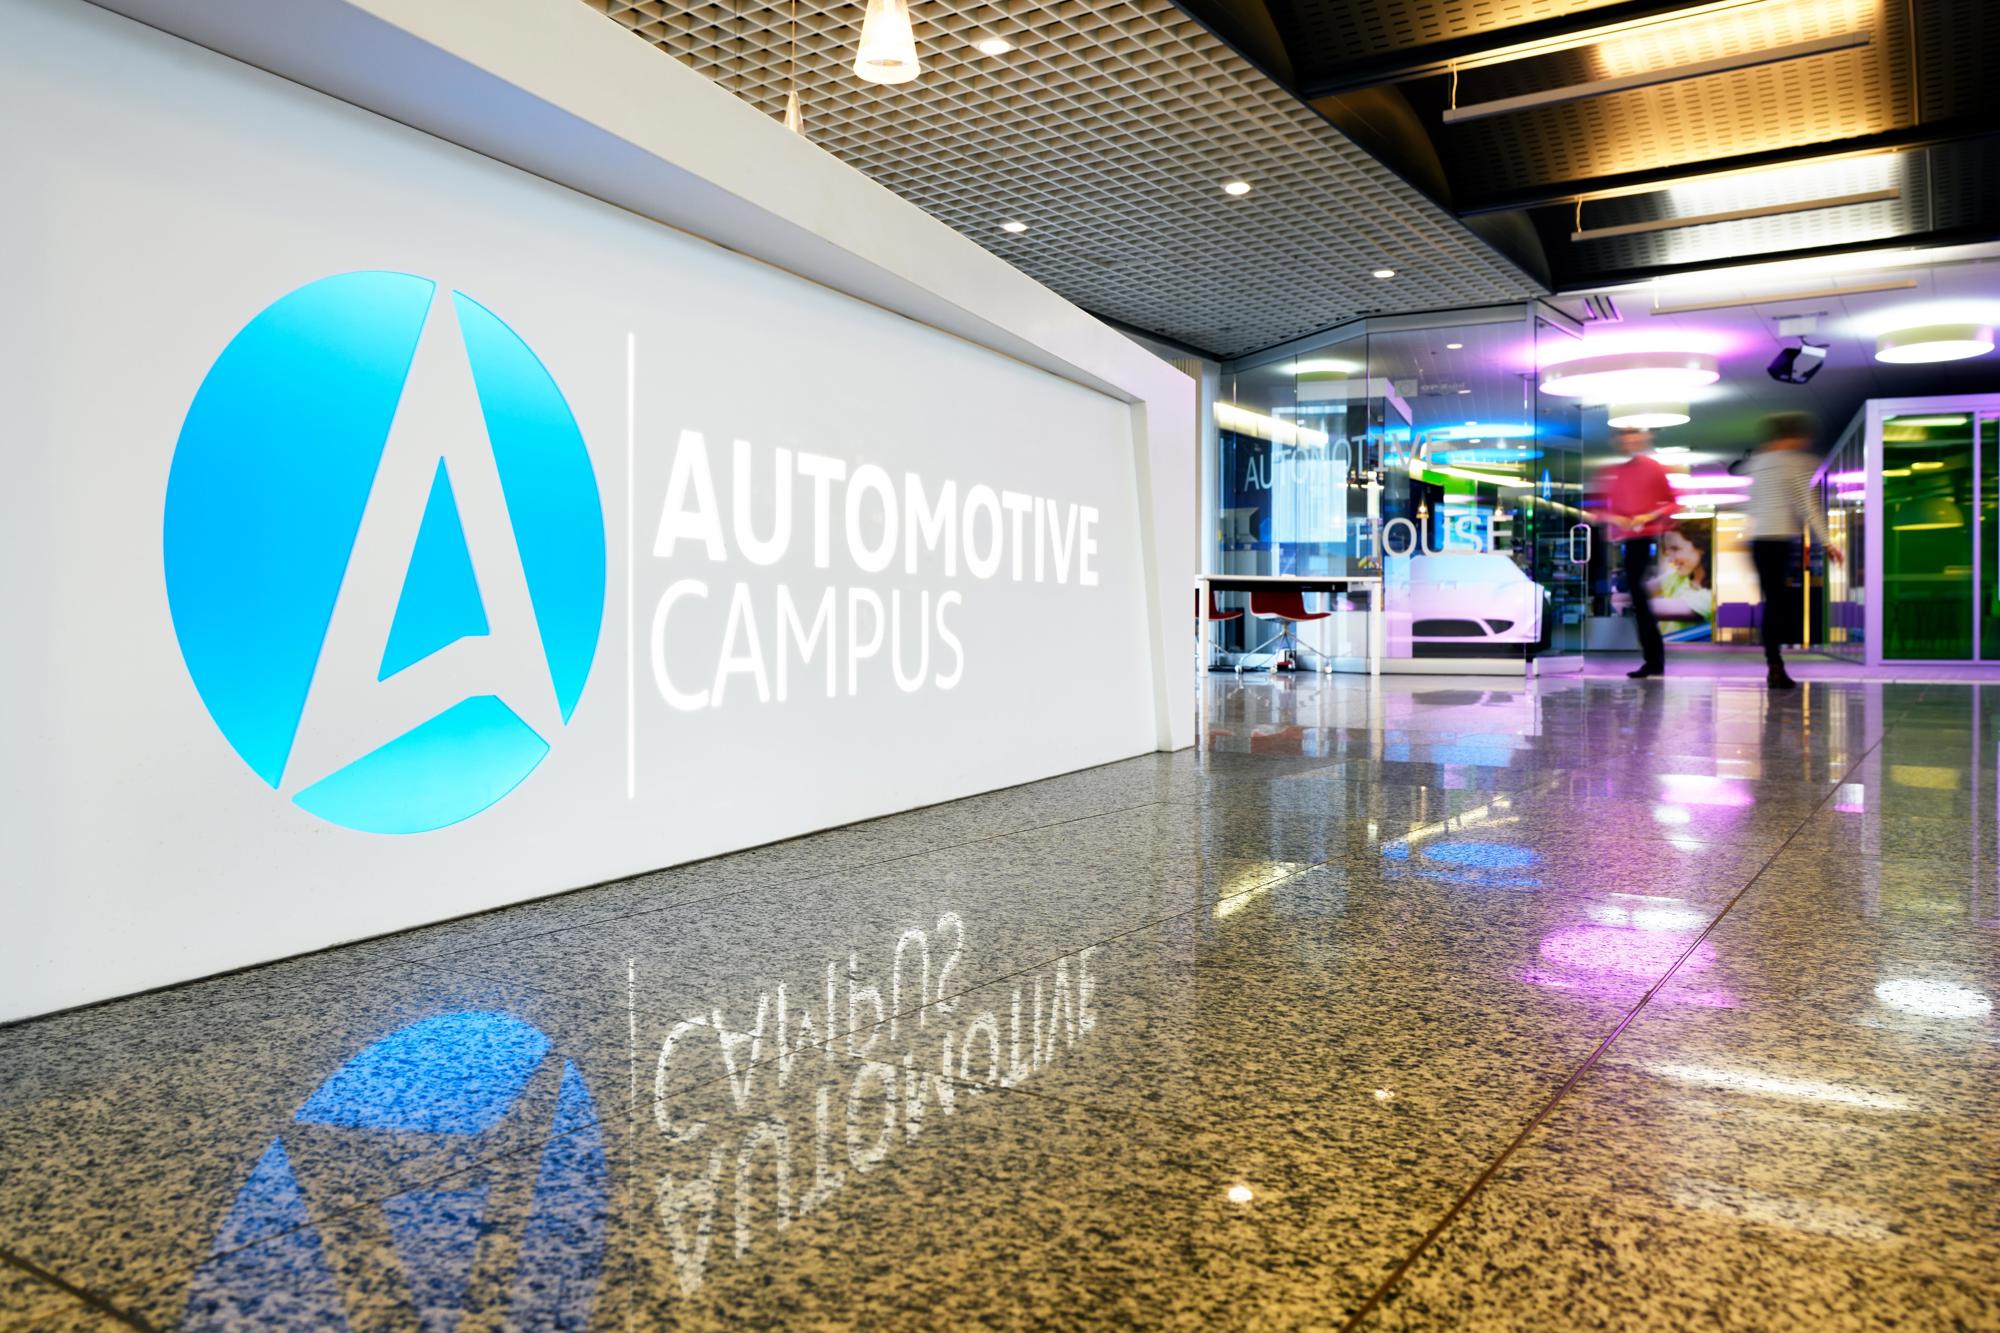 De Automotive Campus in Helmond is een broedplaats voor innovaties op mobiliteitsgebied